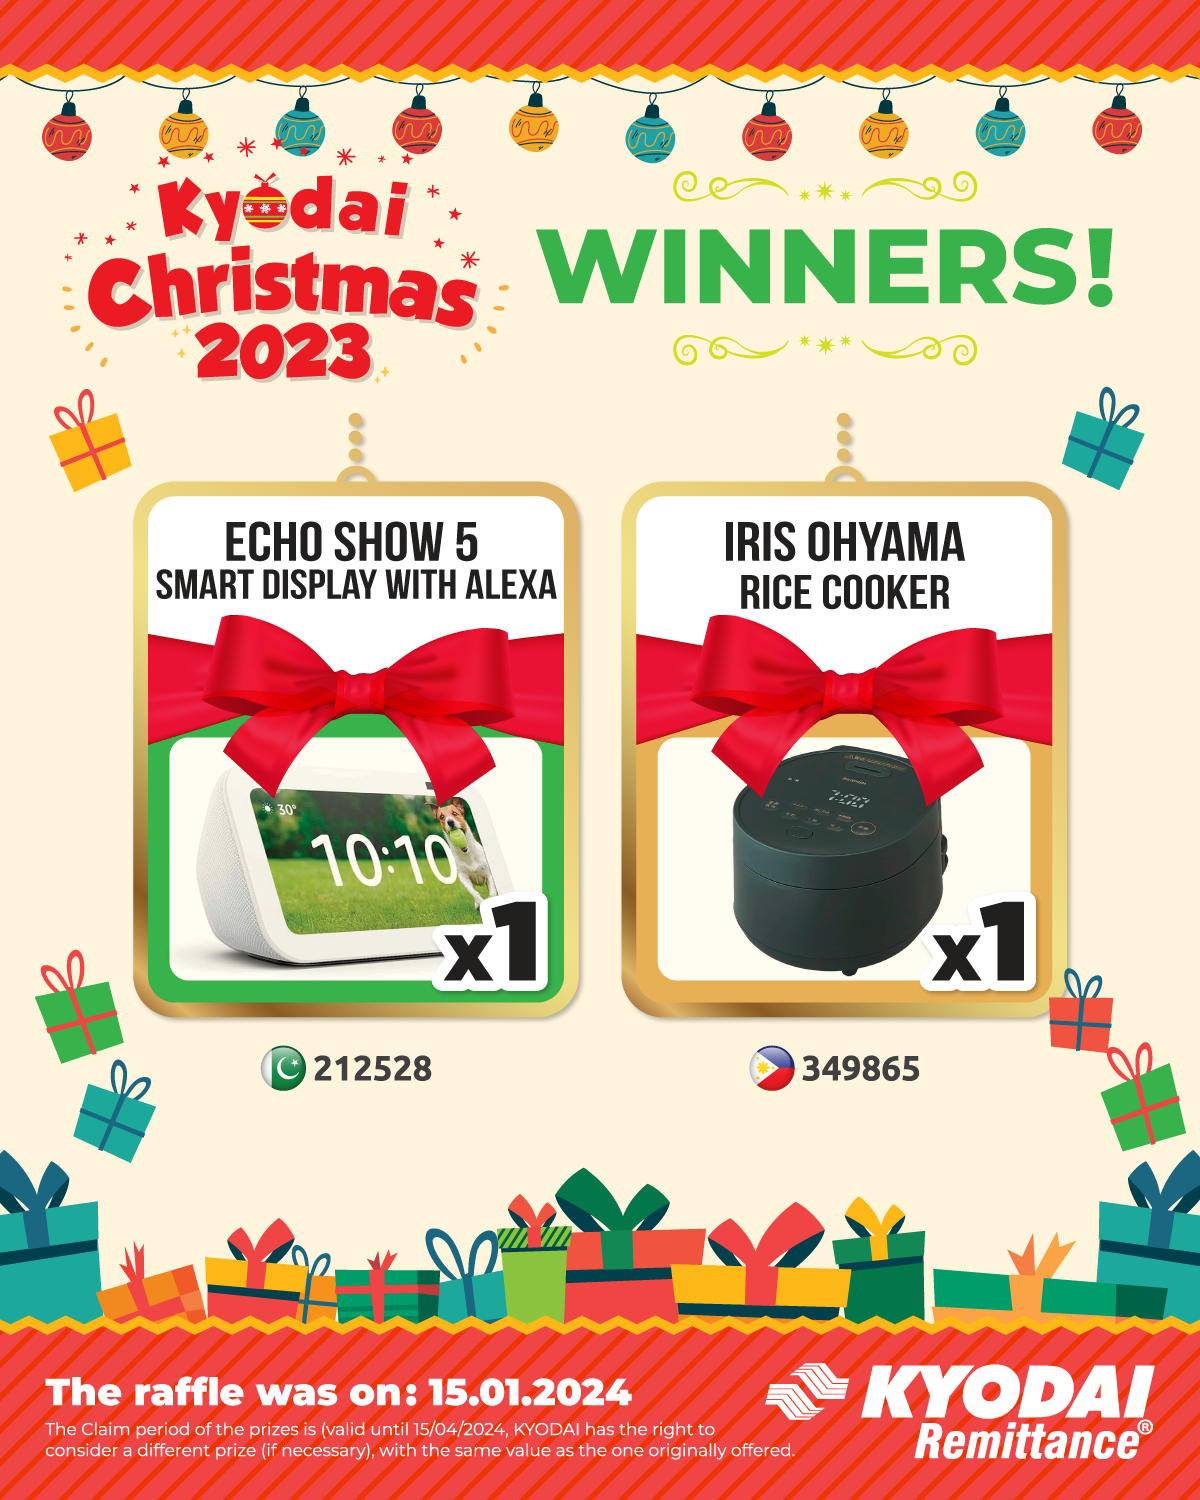 KYODAI CHRISTMAS 2023 - Winners 02